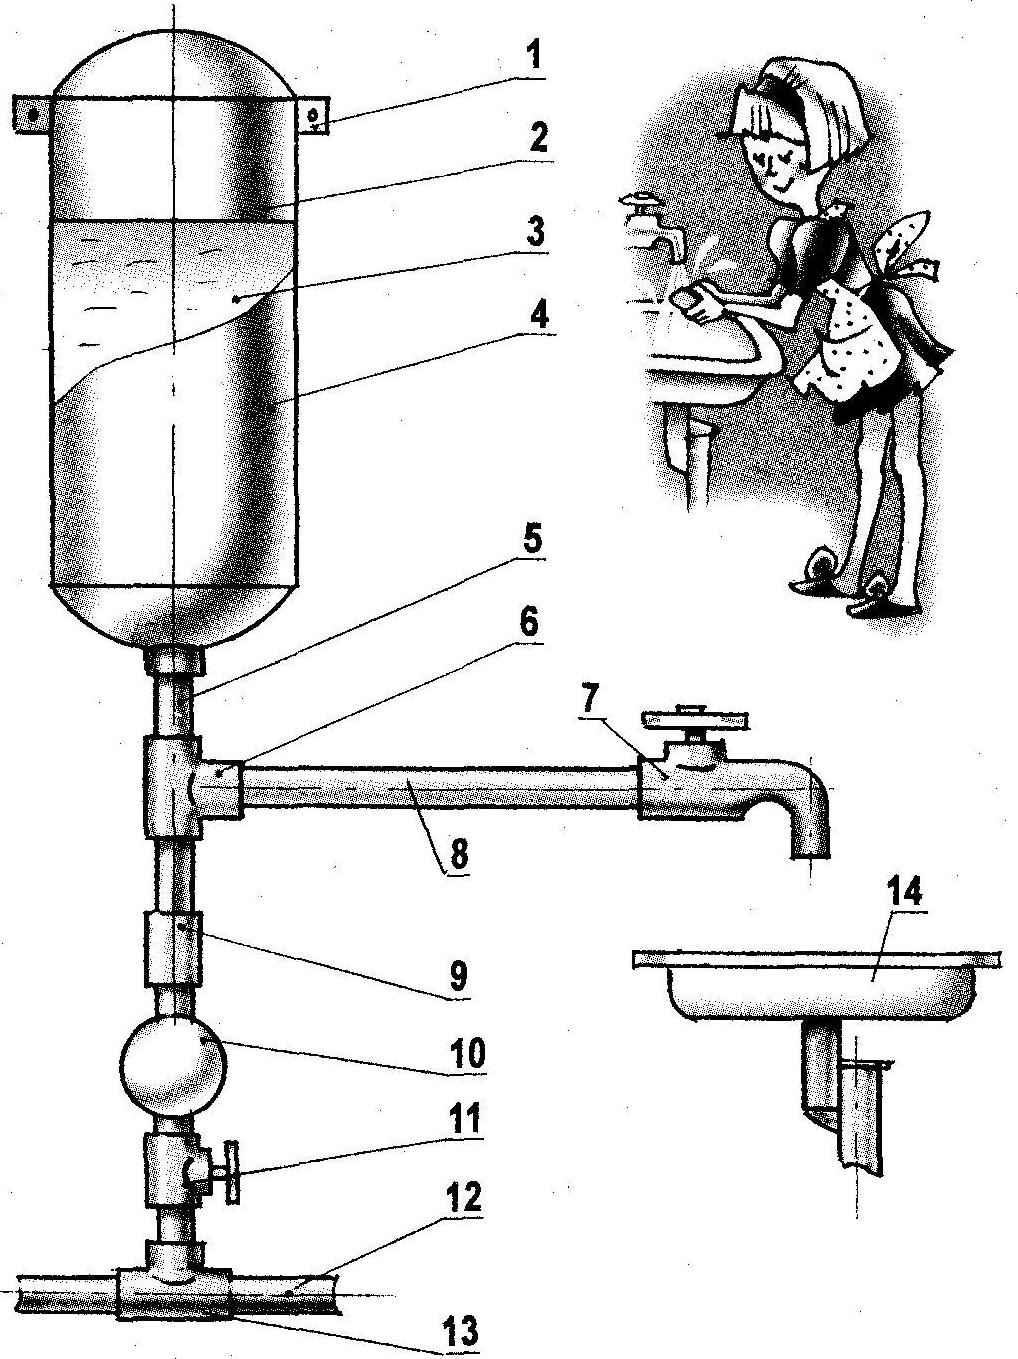 Scheme of uninterrupted housing water tank receiver